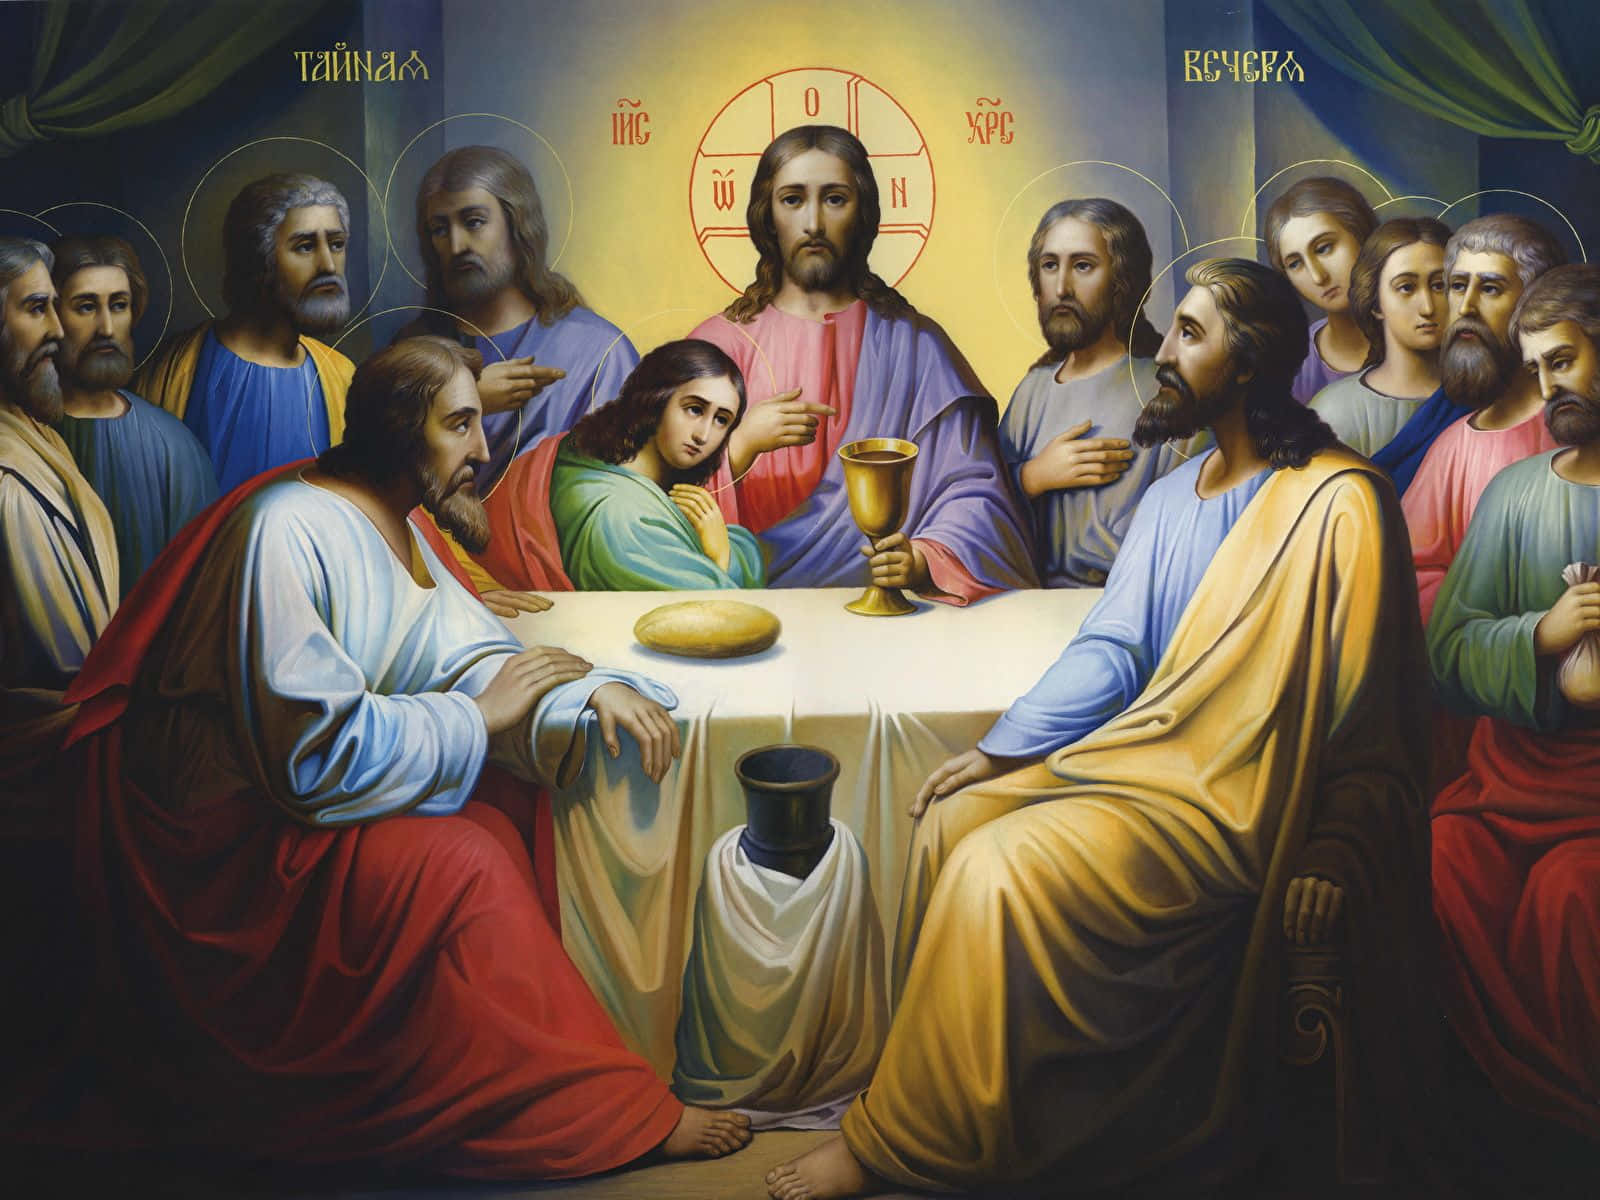 The Last Supper - A Masterpiece by Leonardo da Vinci Wallpaper